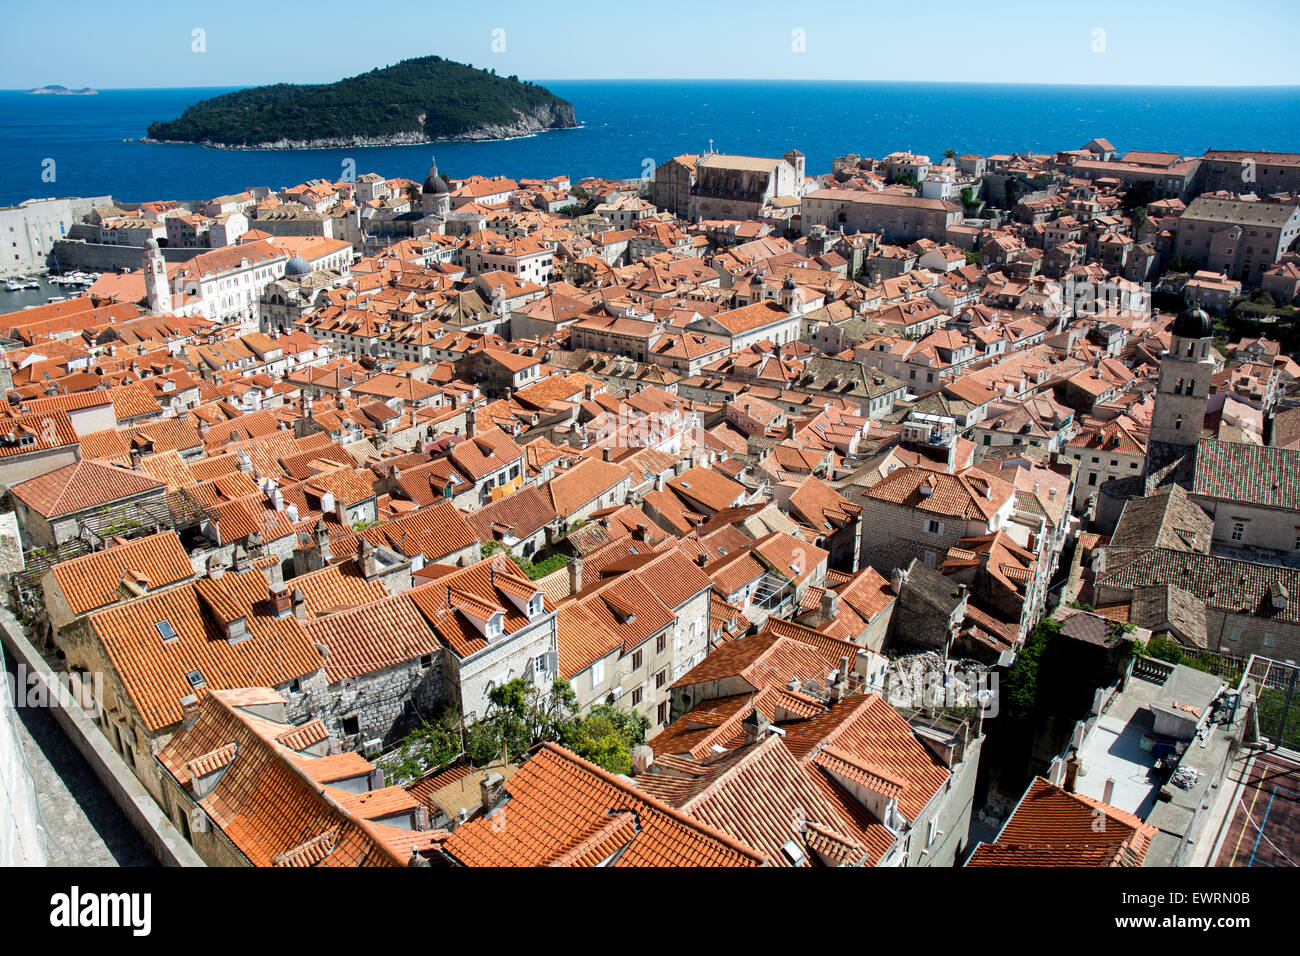 Scène sur le toit de terracota vieille ville avec l'île de Lokrum en arrière-plan, Dubrovnik, Croatie Banque D'Images